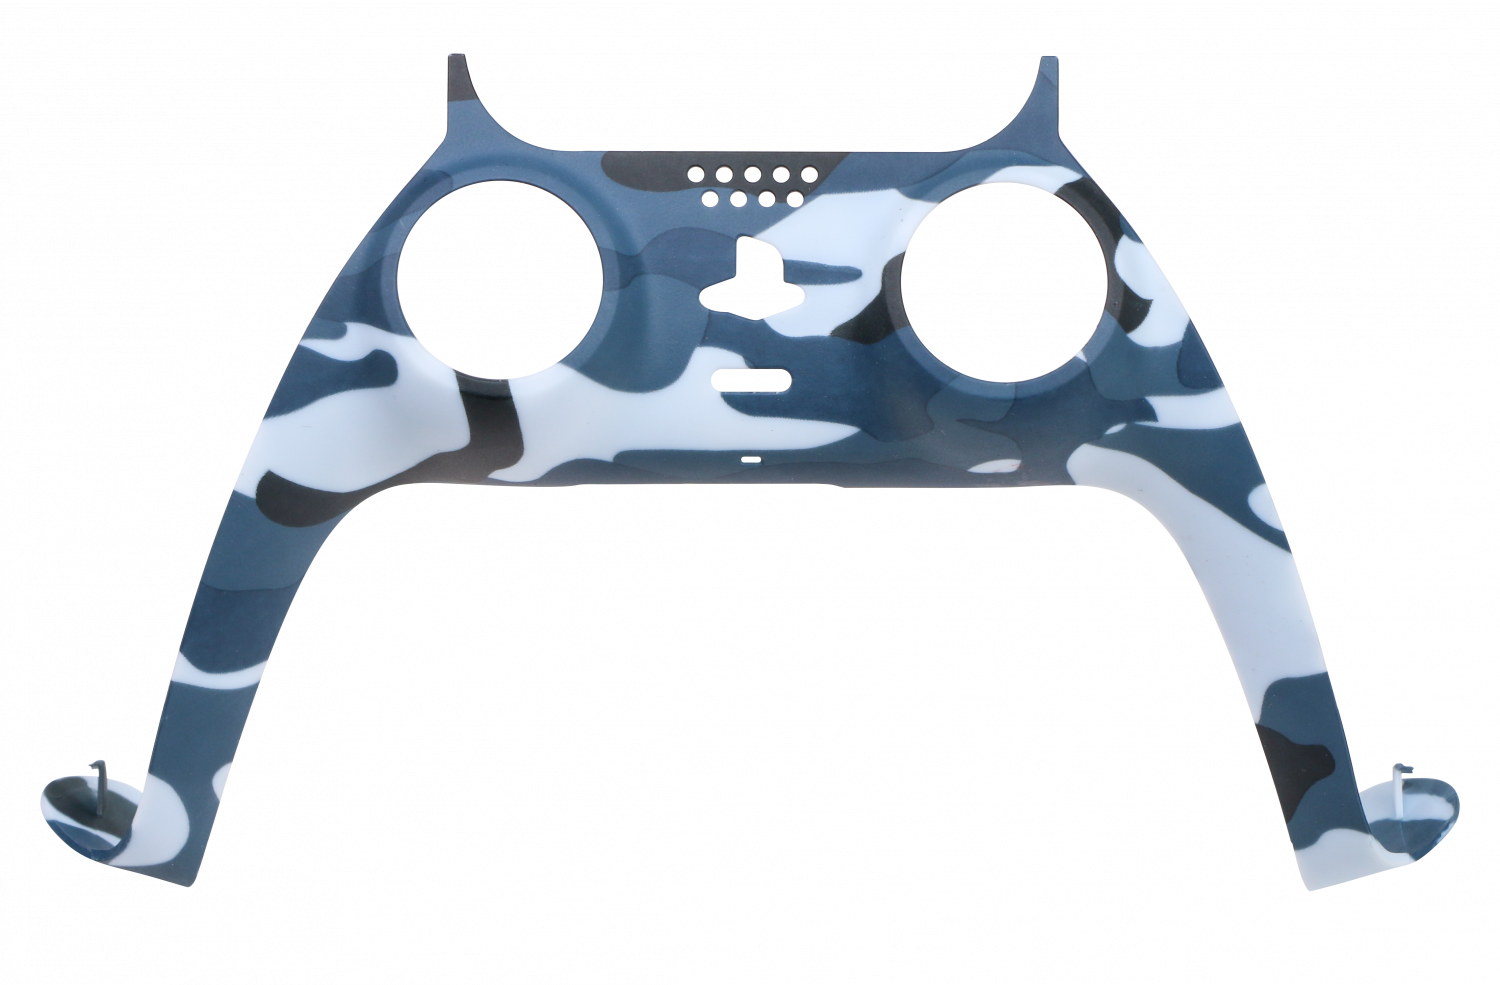 Piranha PS5 Controller Skins - Camo Blue